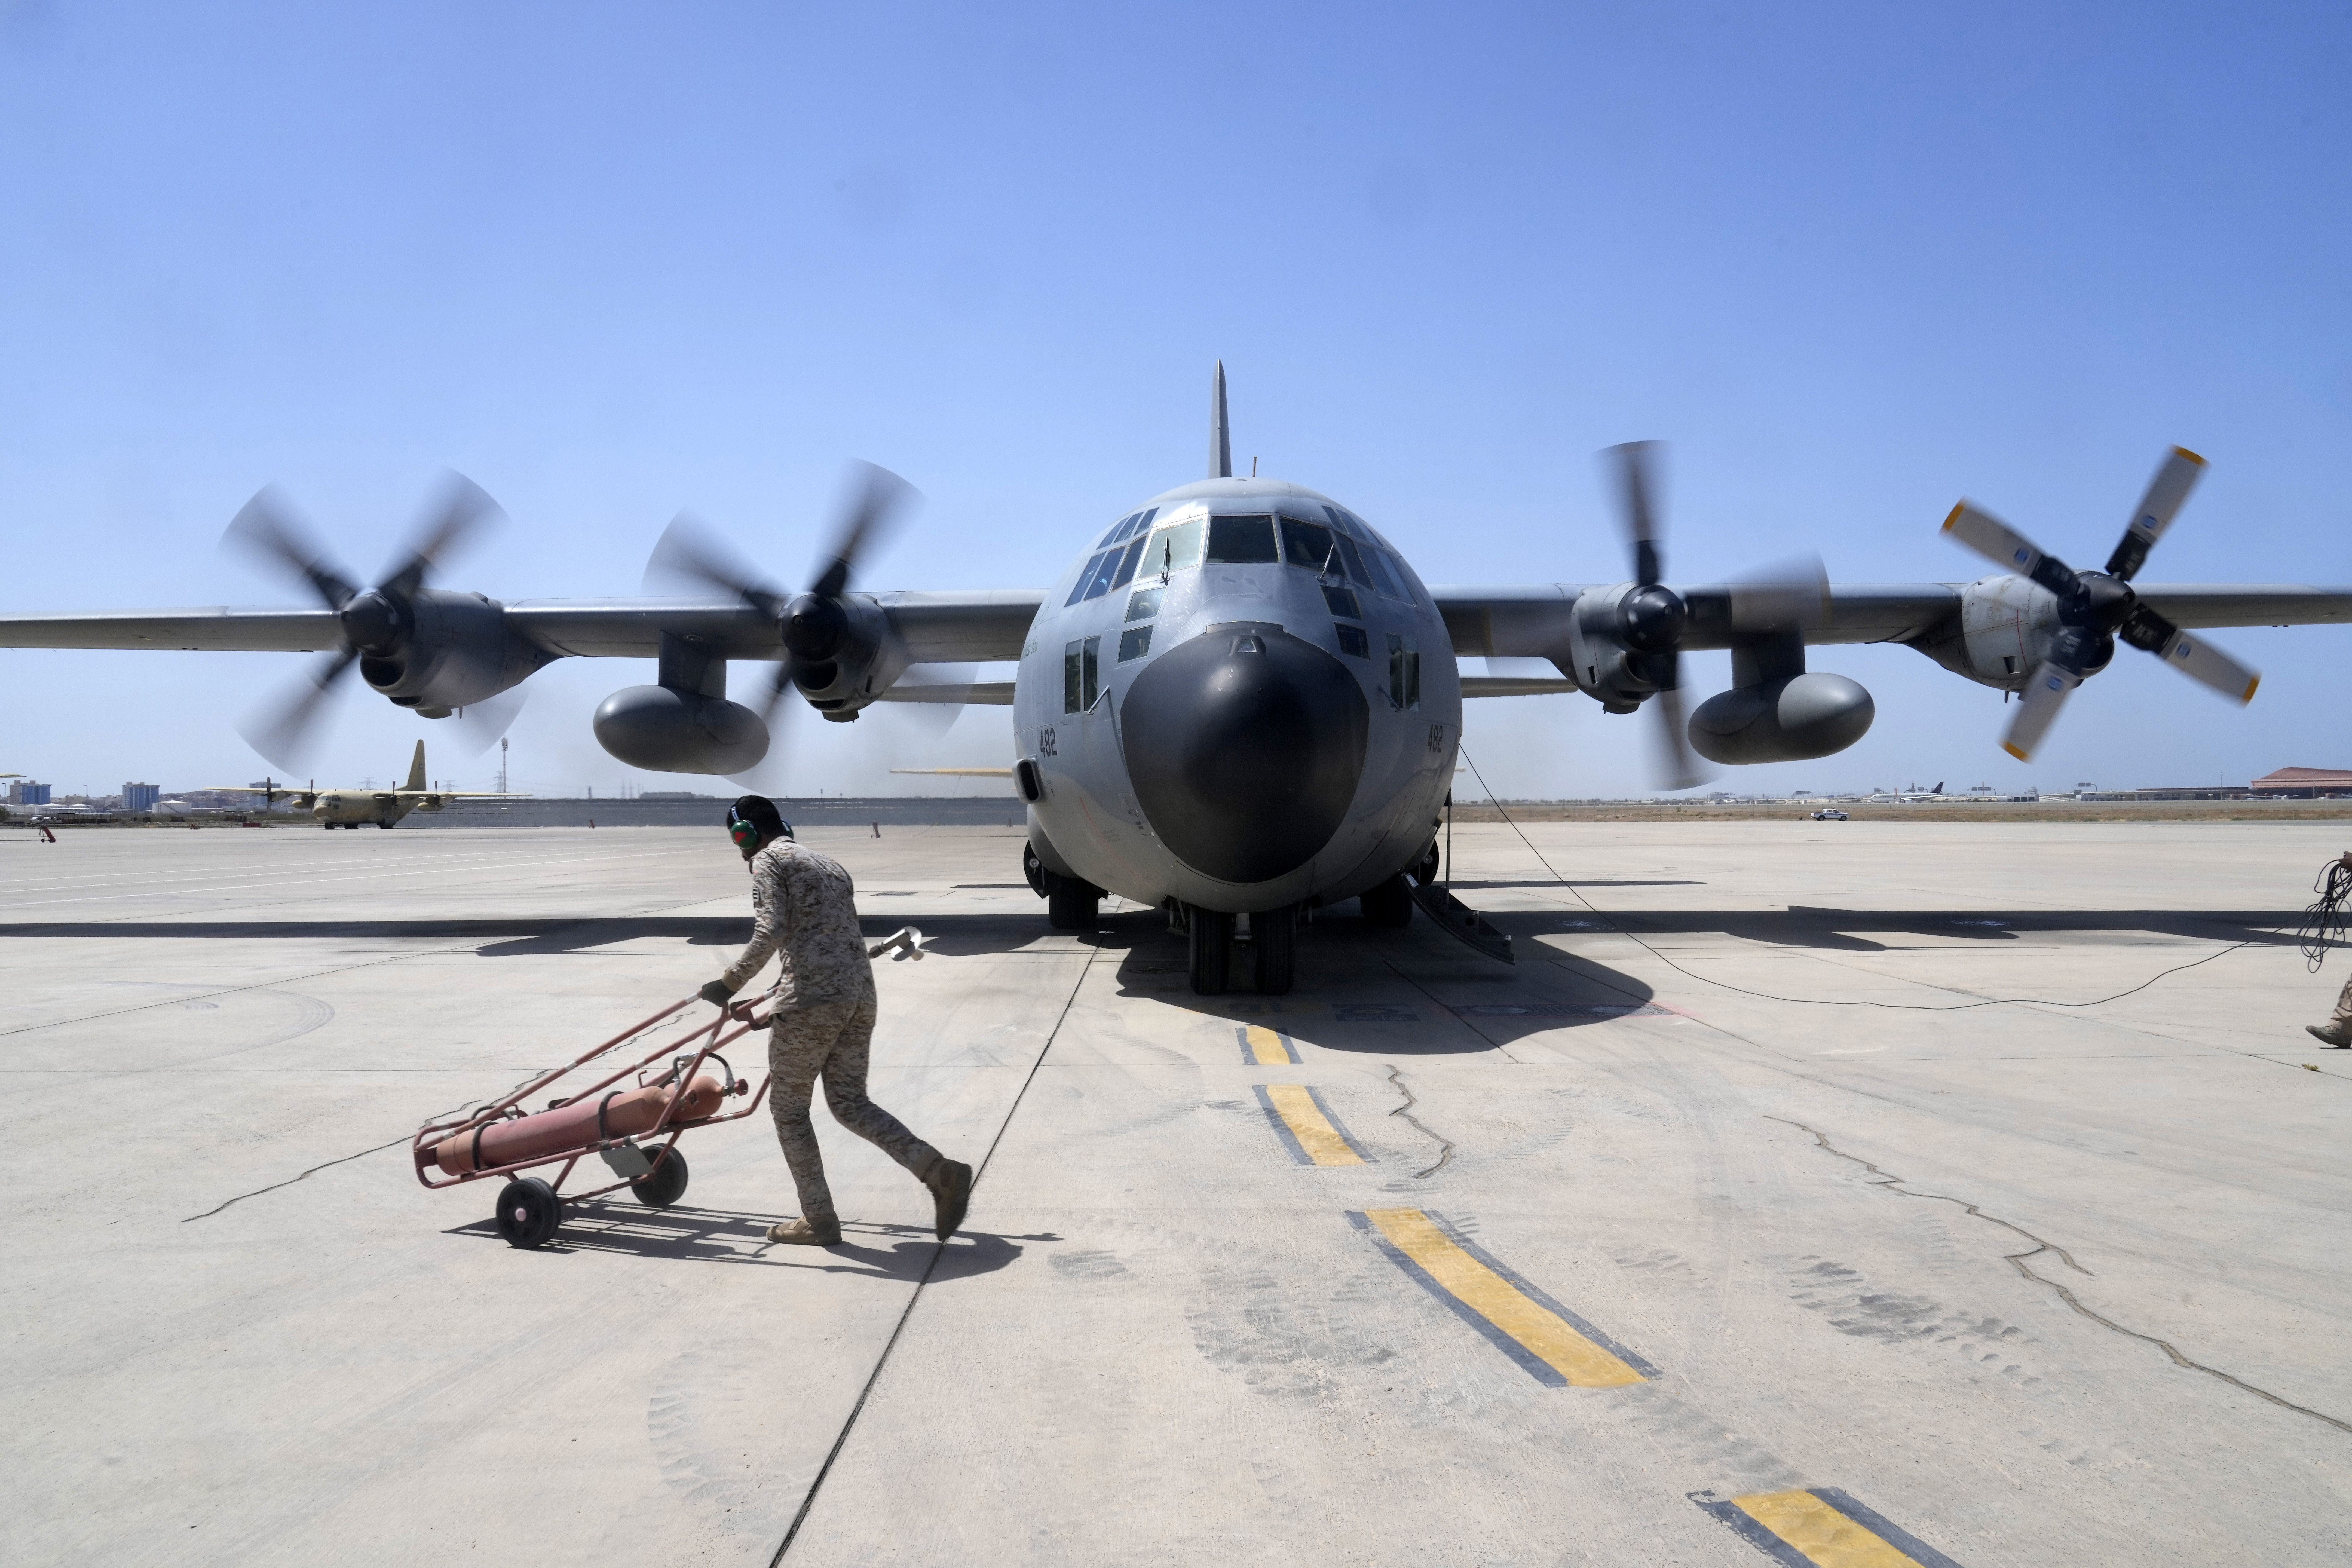 Σουδάν: Κλειστός σε όλες τις αερομεταφορές θα παραμείνει ο εναέριος χώρος του μέχρι τις 31 Μαΐου